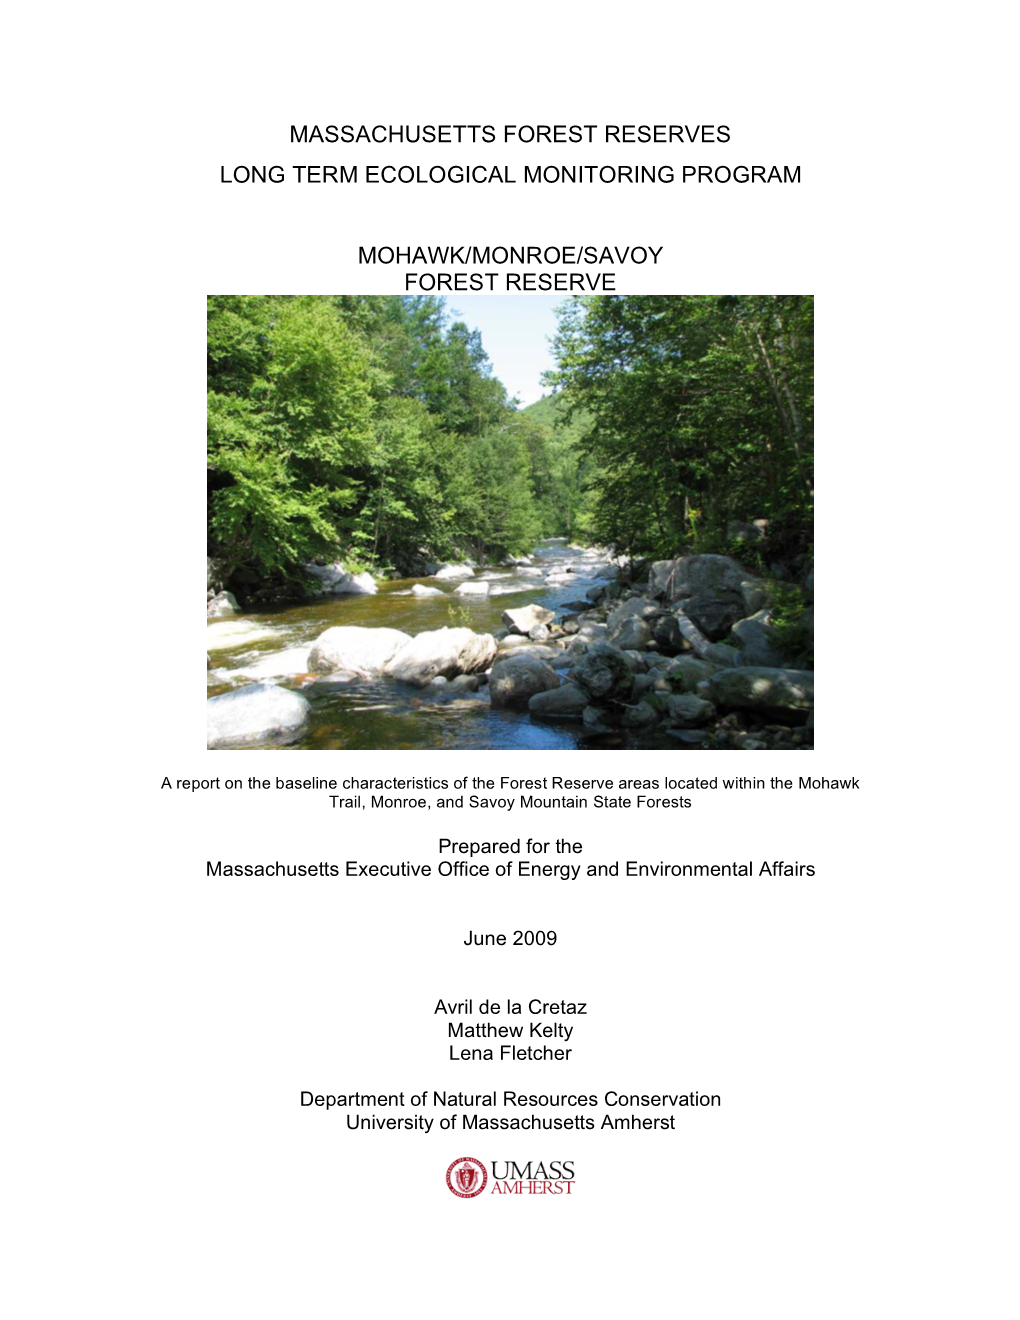 Massachusetts Forest Reserves Long Term Ecological Monitoring Program